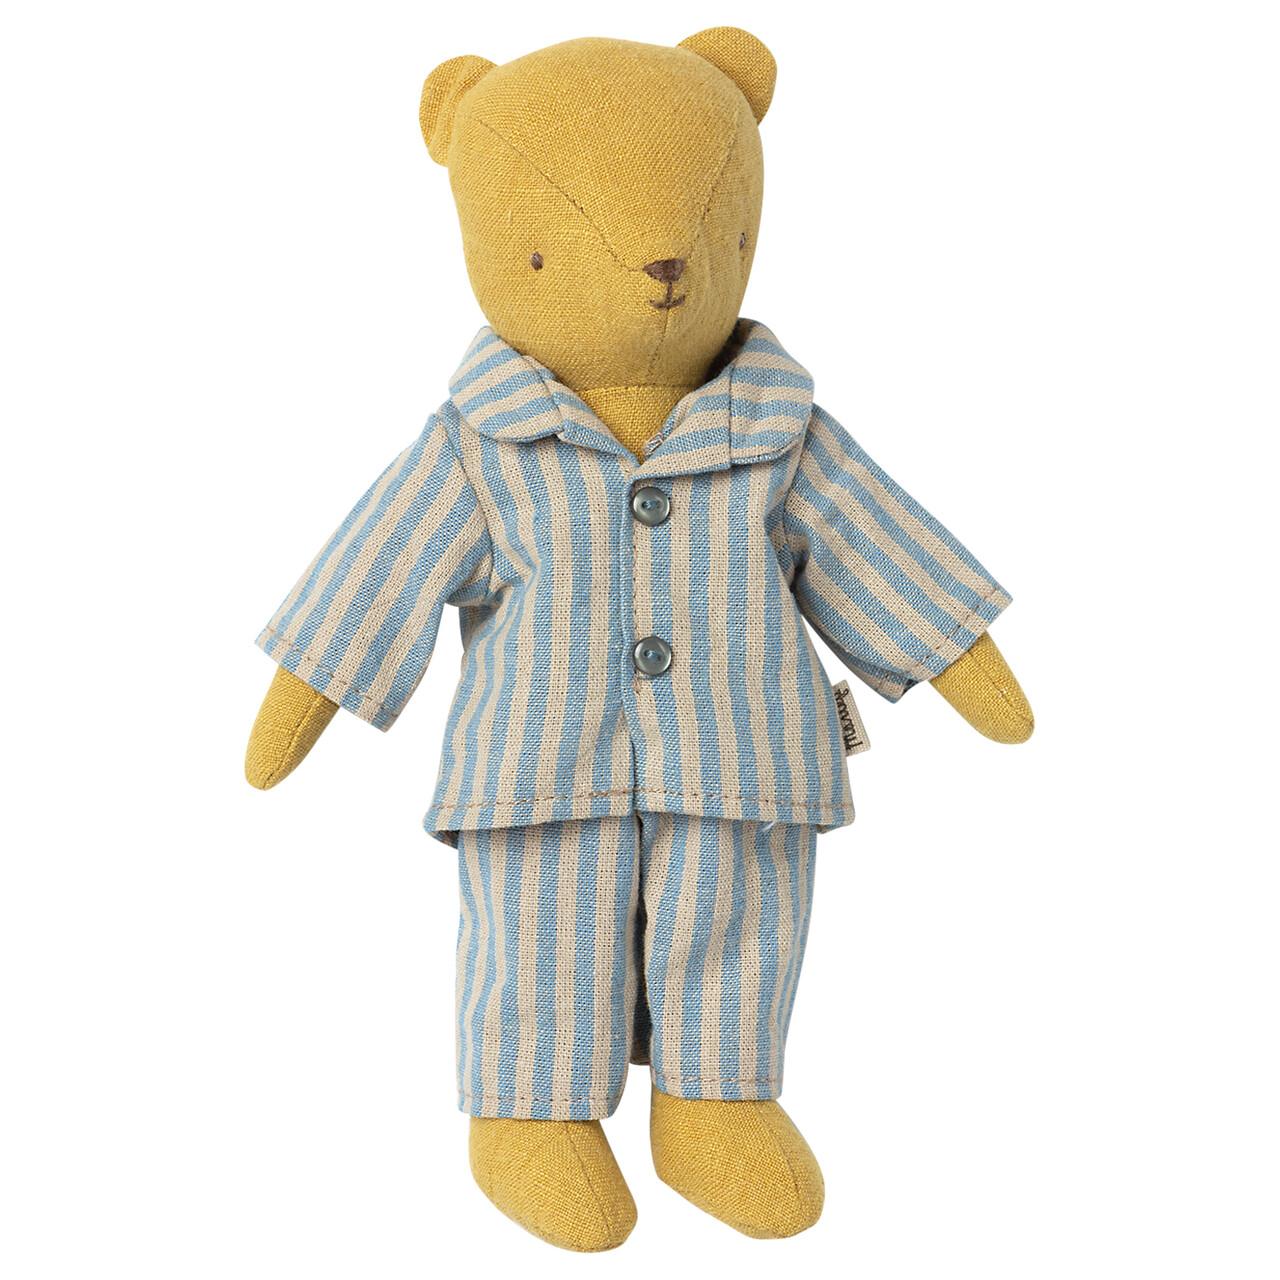 Пижама для Мишки Тедди, '21